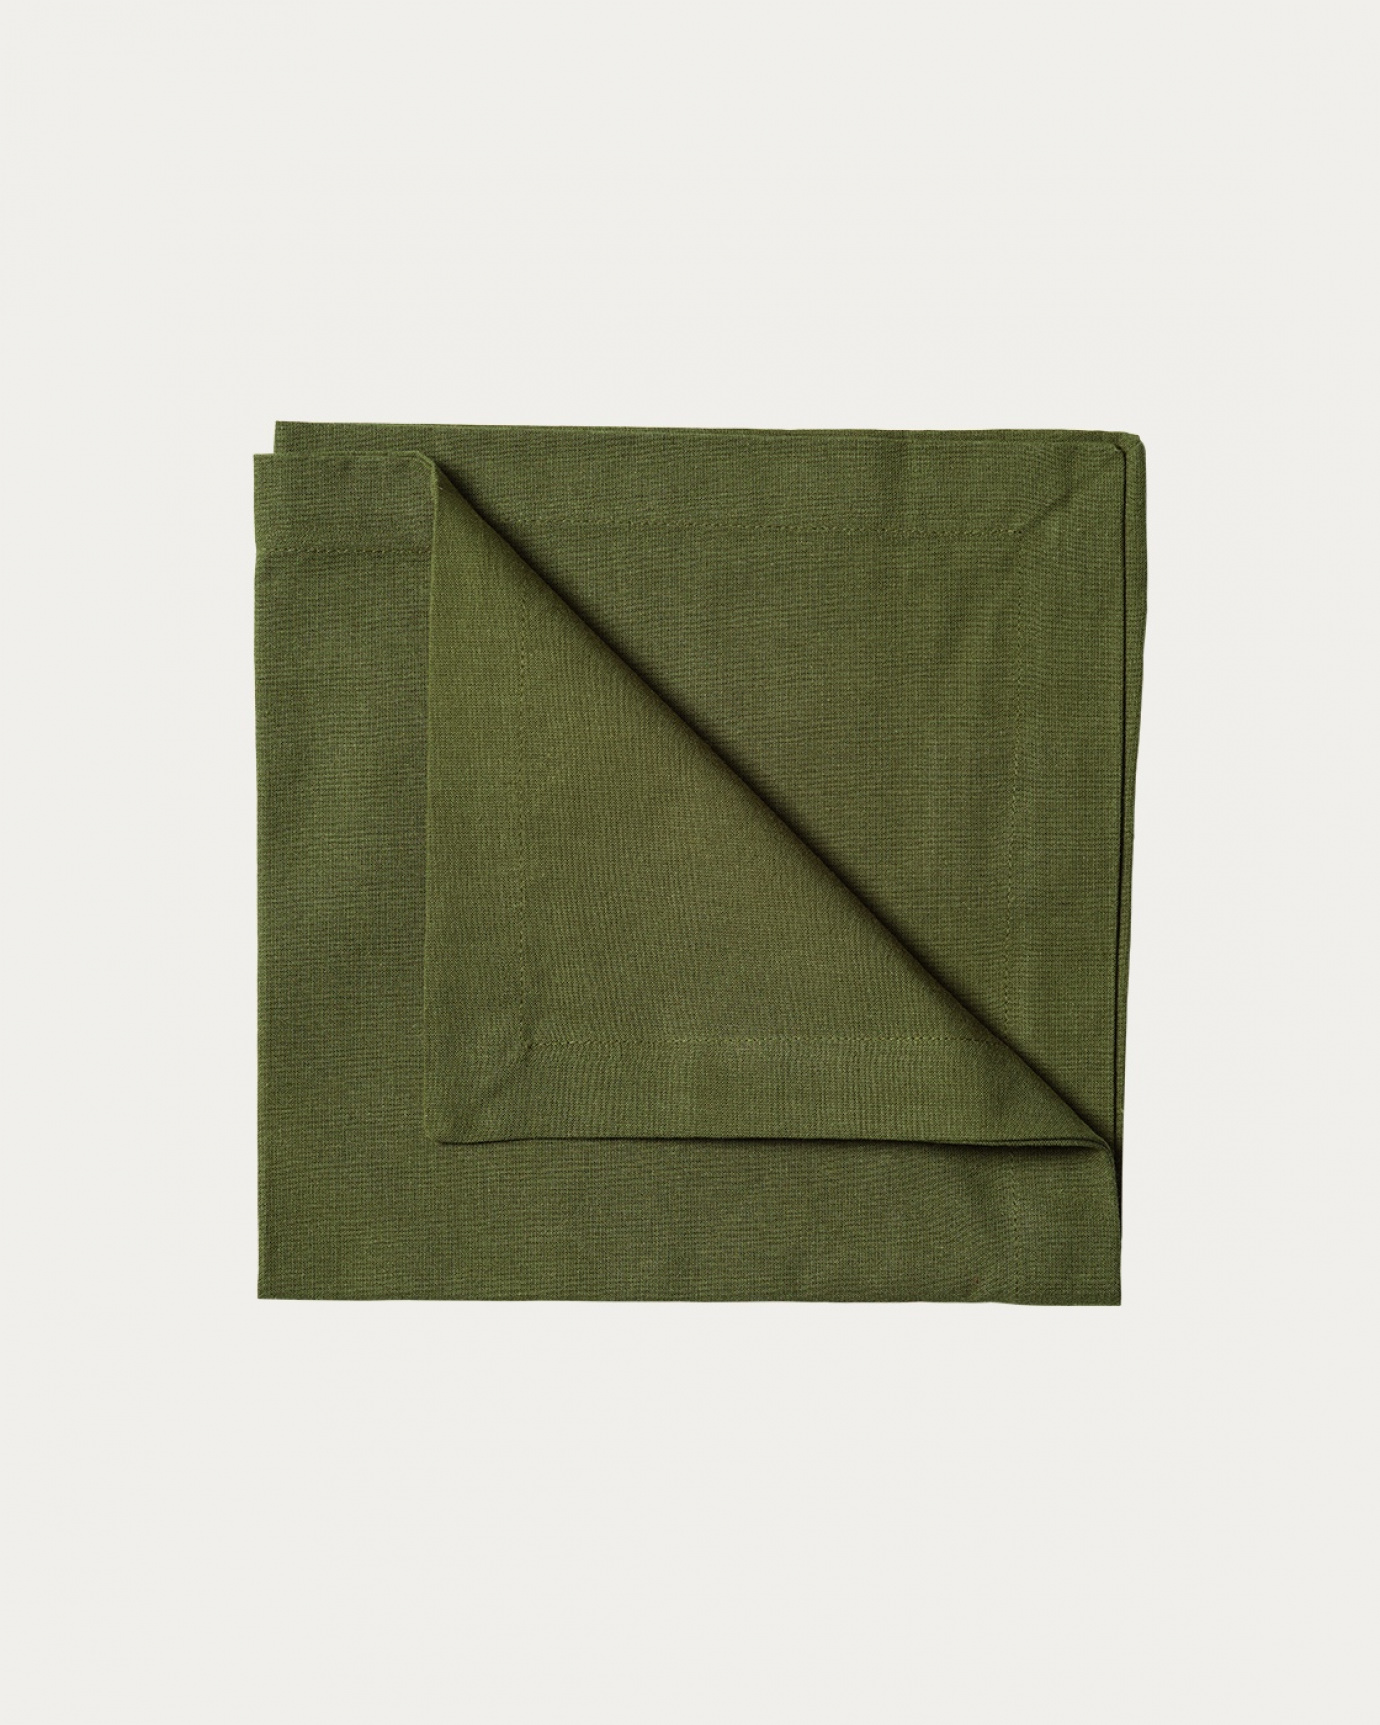 Immagine prodotto verde oliva scuro ROBERT tovagliolo in morbido cotone di LINUM DESIGN. Dimensioni 45x45 cm e venduto in 4-pezzi.